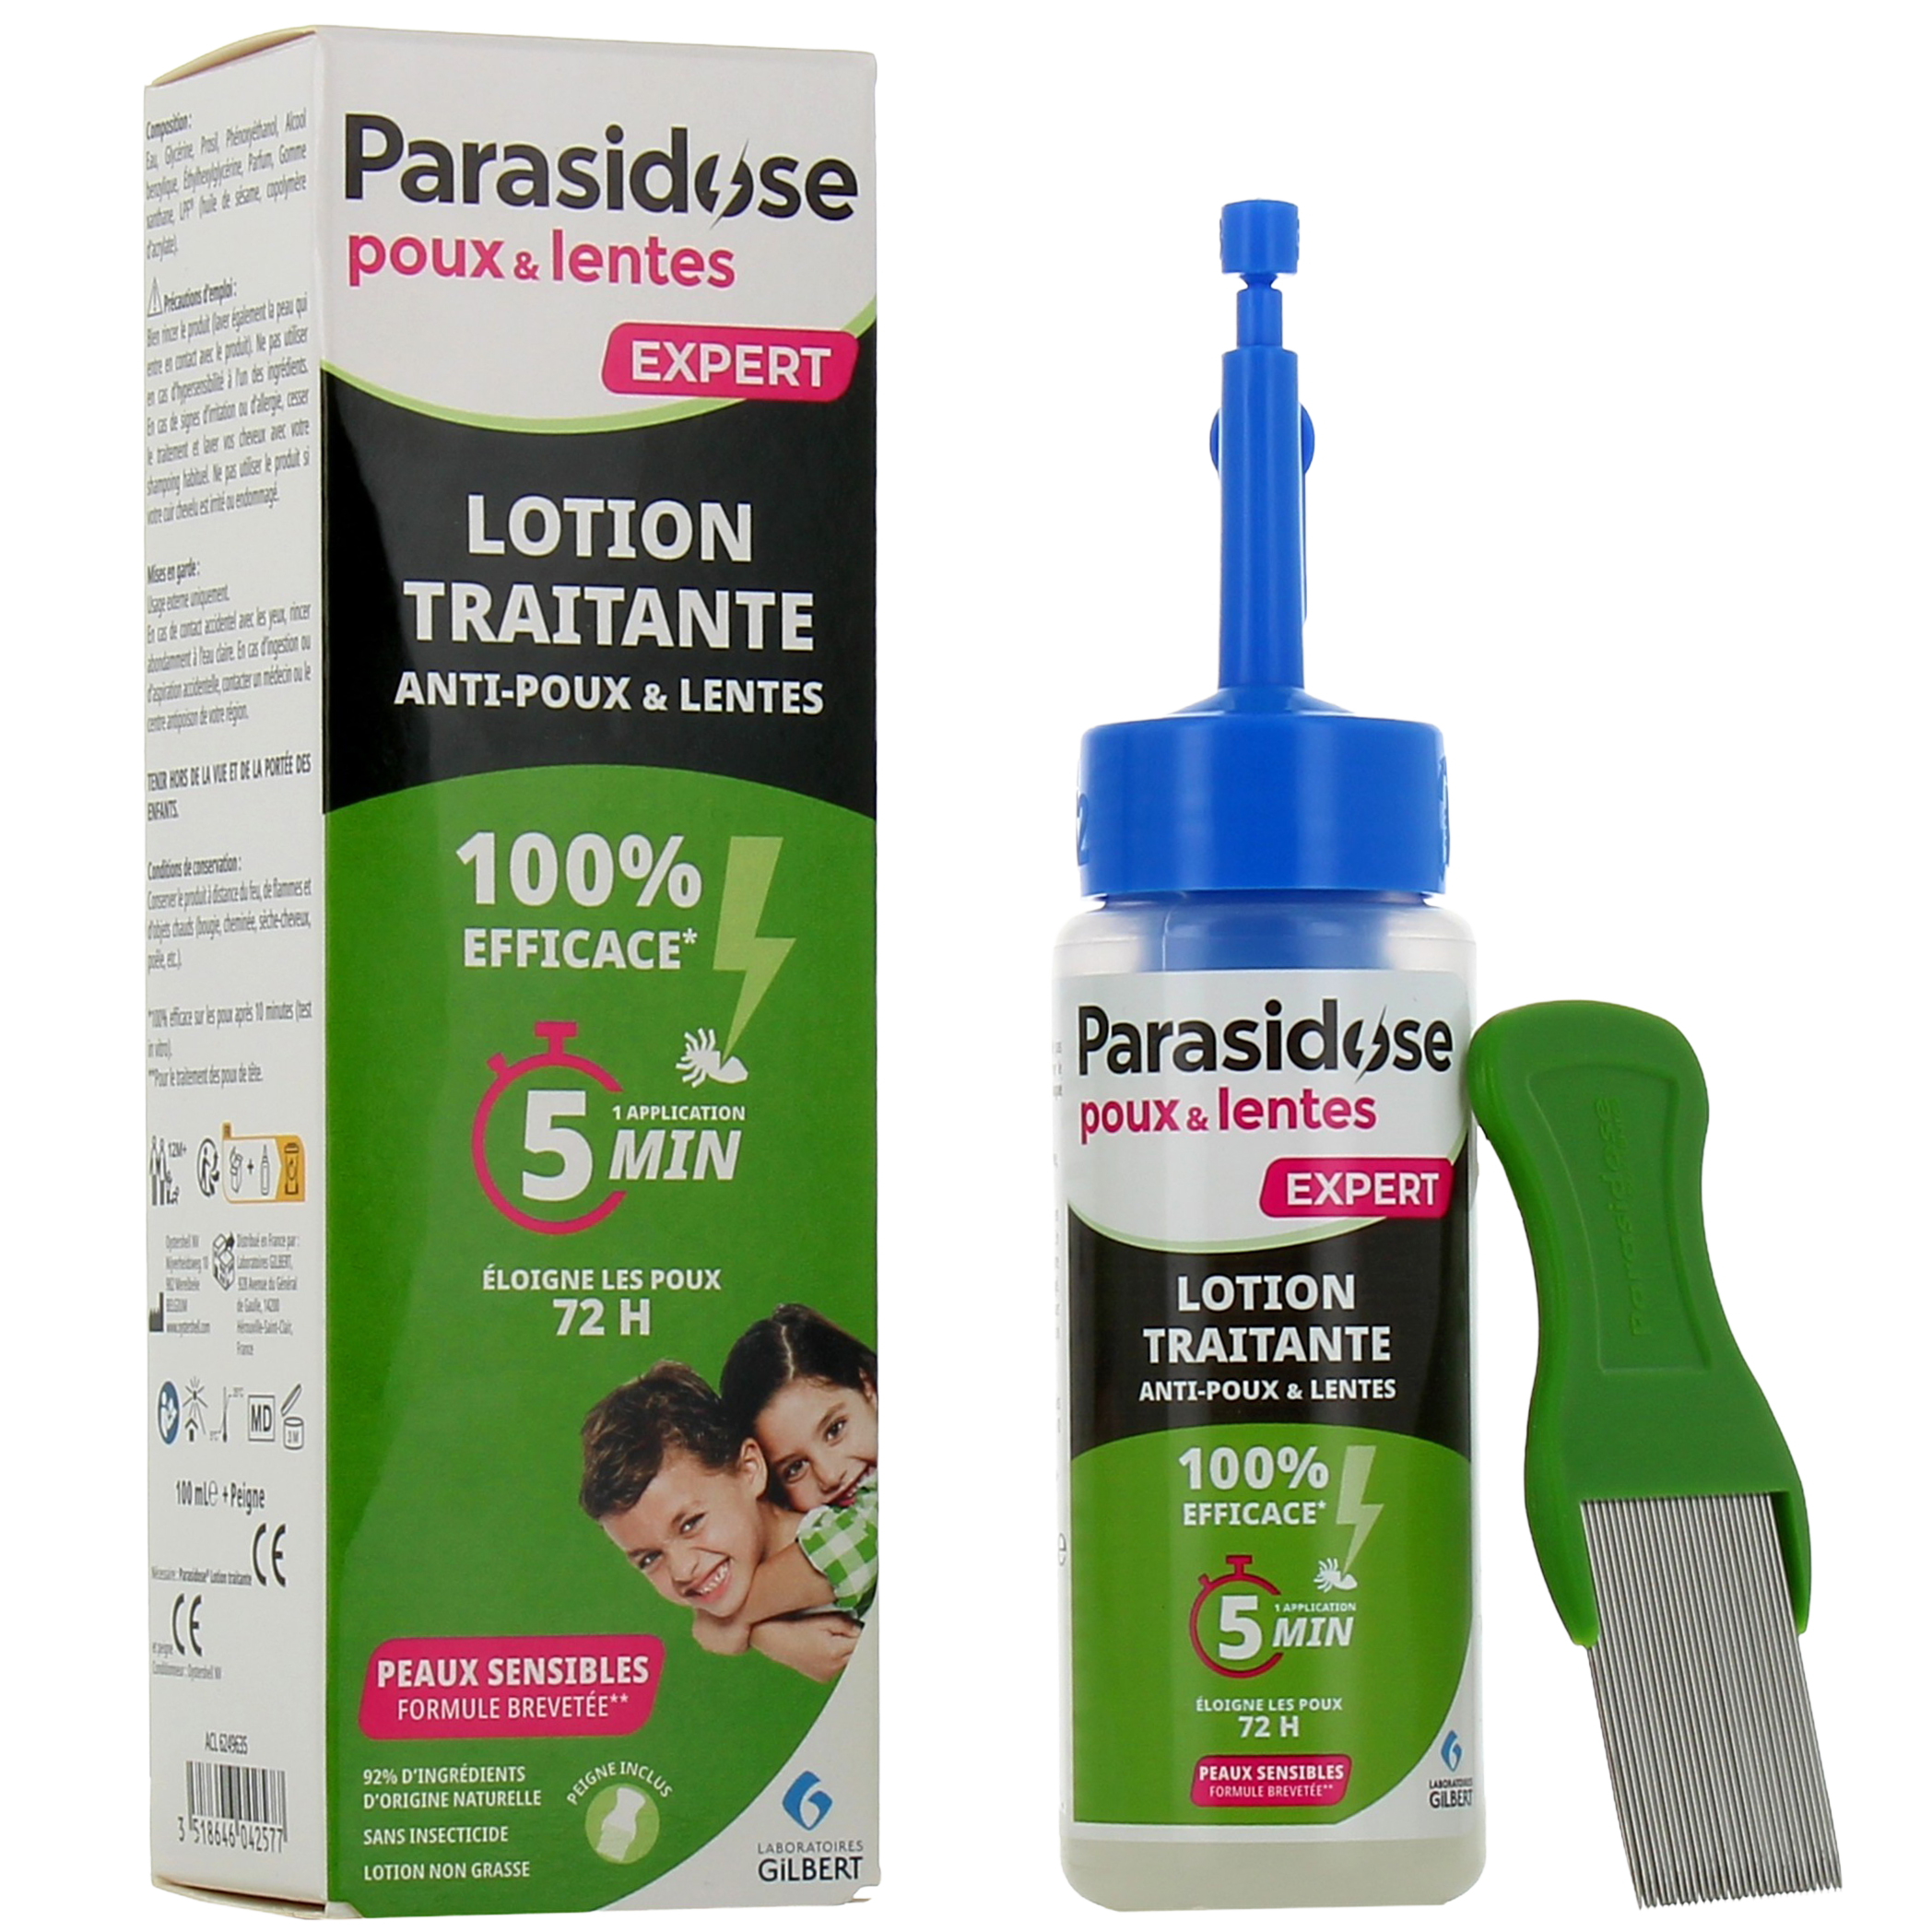 Parasidose lotion anti poux et lentes - 100% efficace en 5 minutes